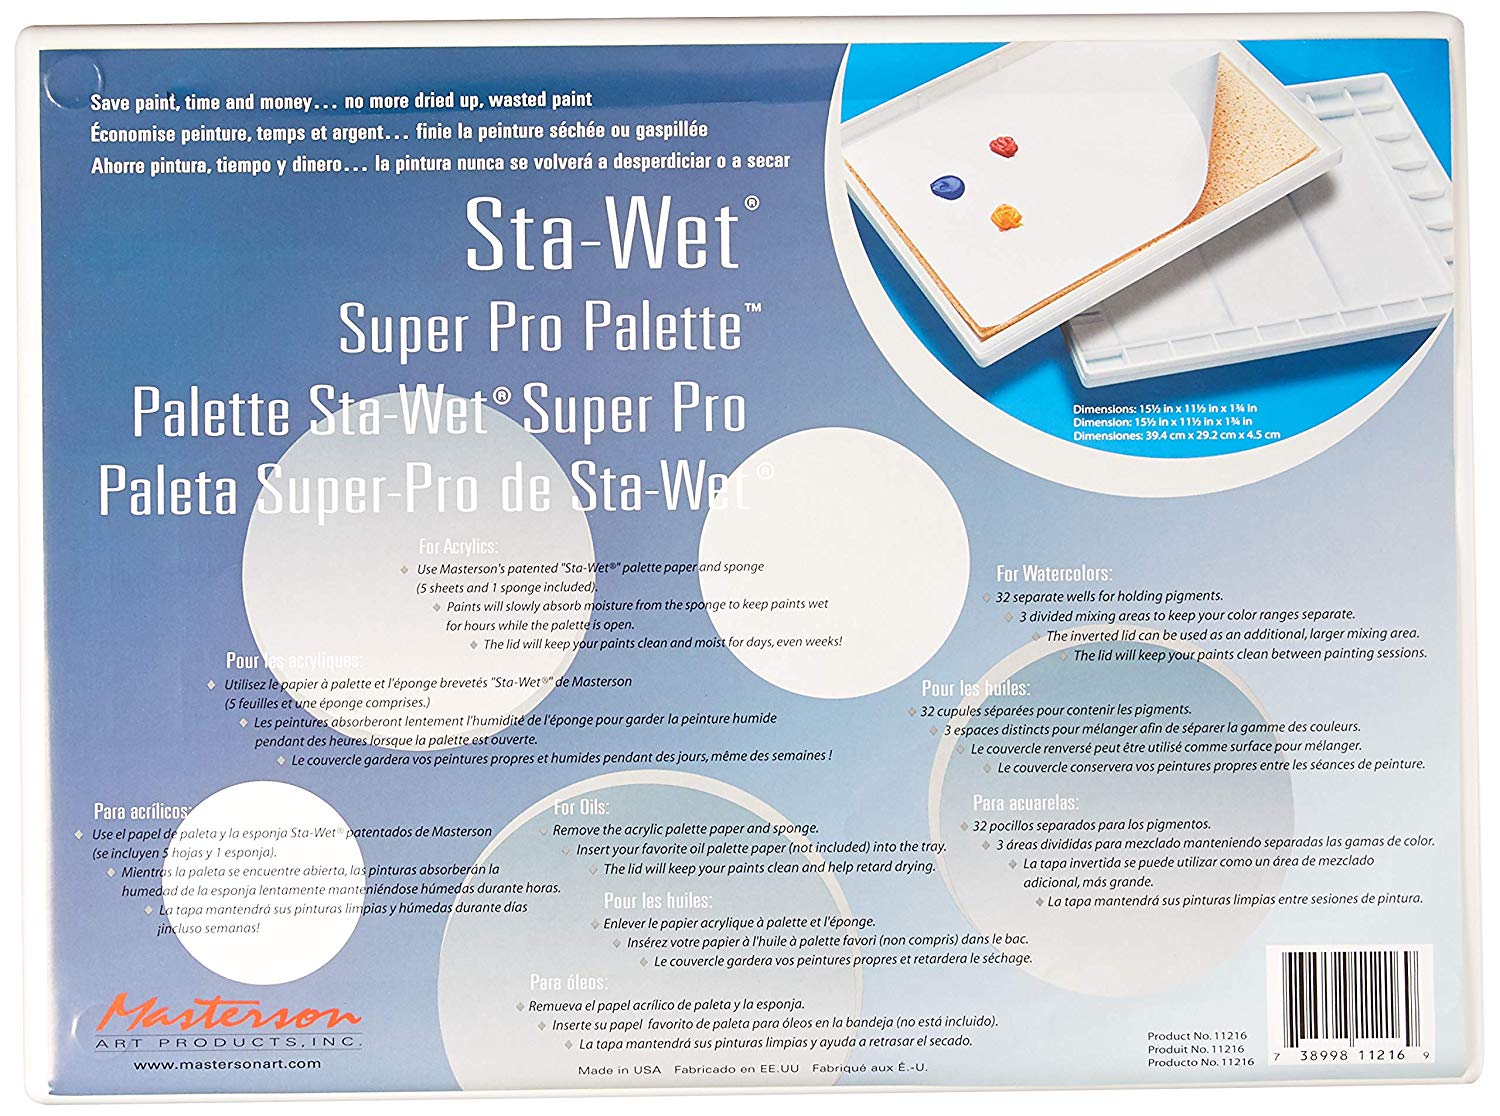 Sta-Wet Palettes and Refills - Wyndham Art Supplies